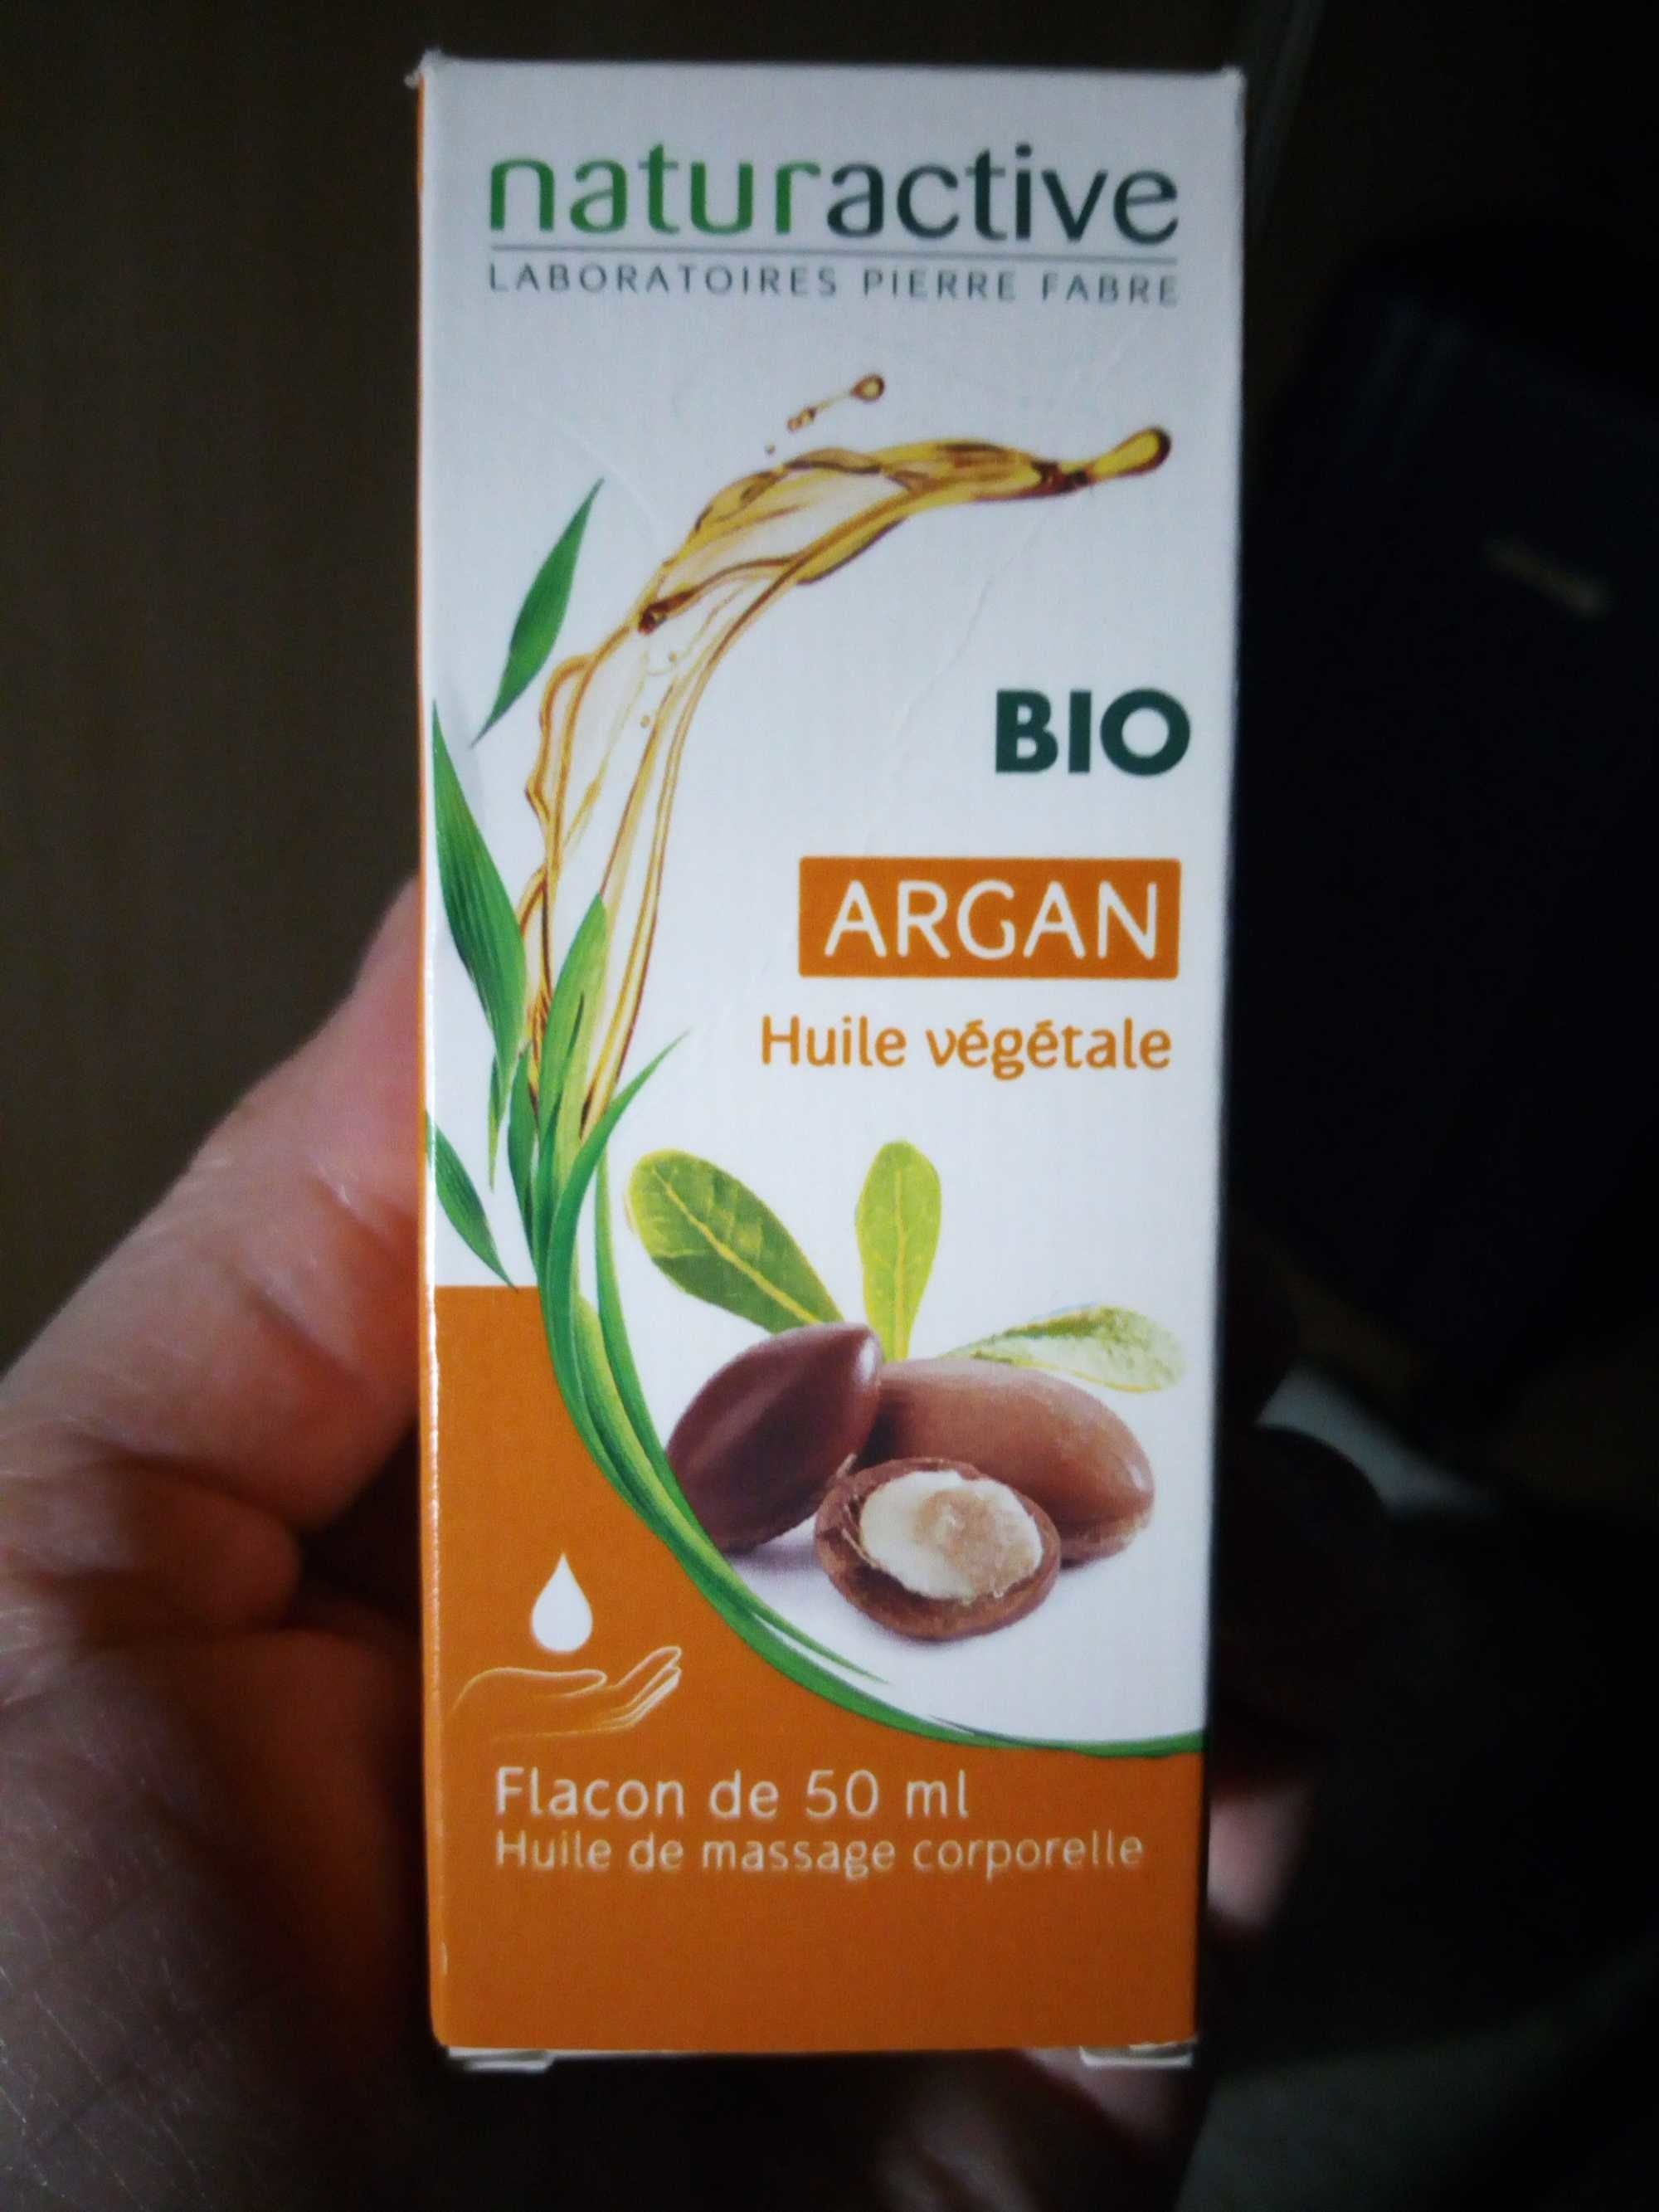 Bio Argan huile végétale - Produkt - fr